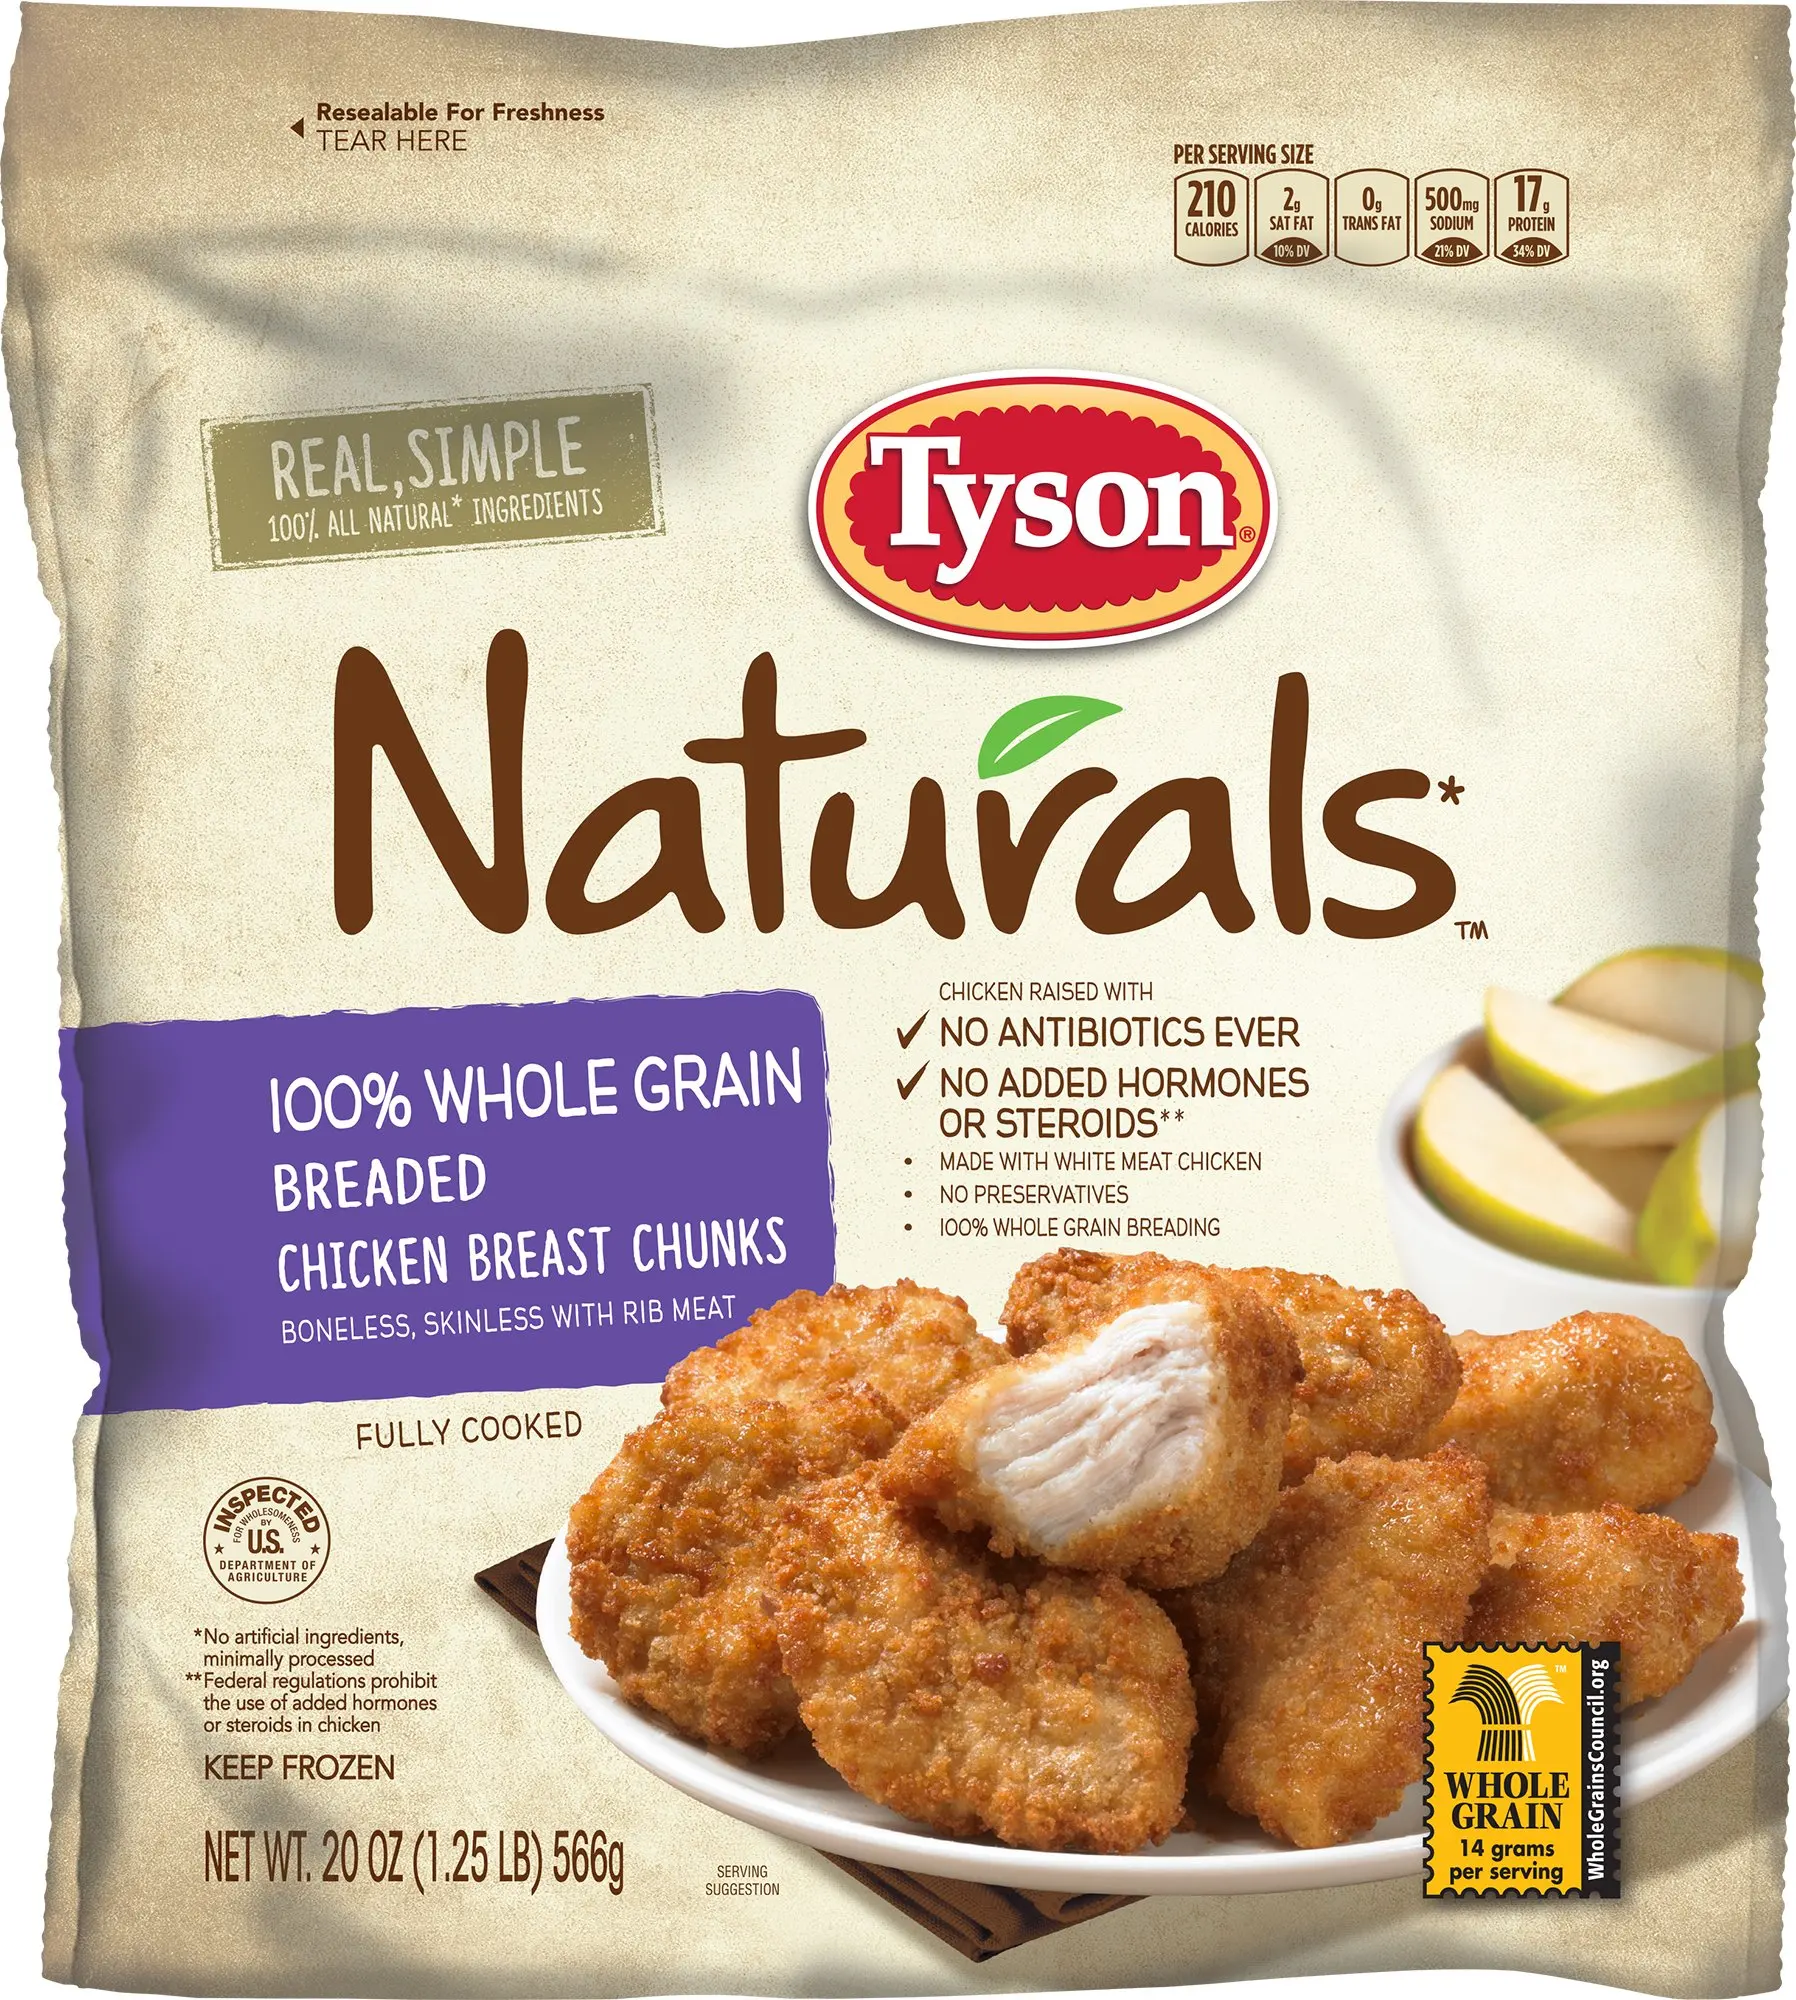 Breaded Chicken. Crispy Chicken Nuggets package Design. Naturals ingredients and Fresh Chicken Junior.